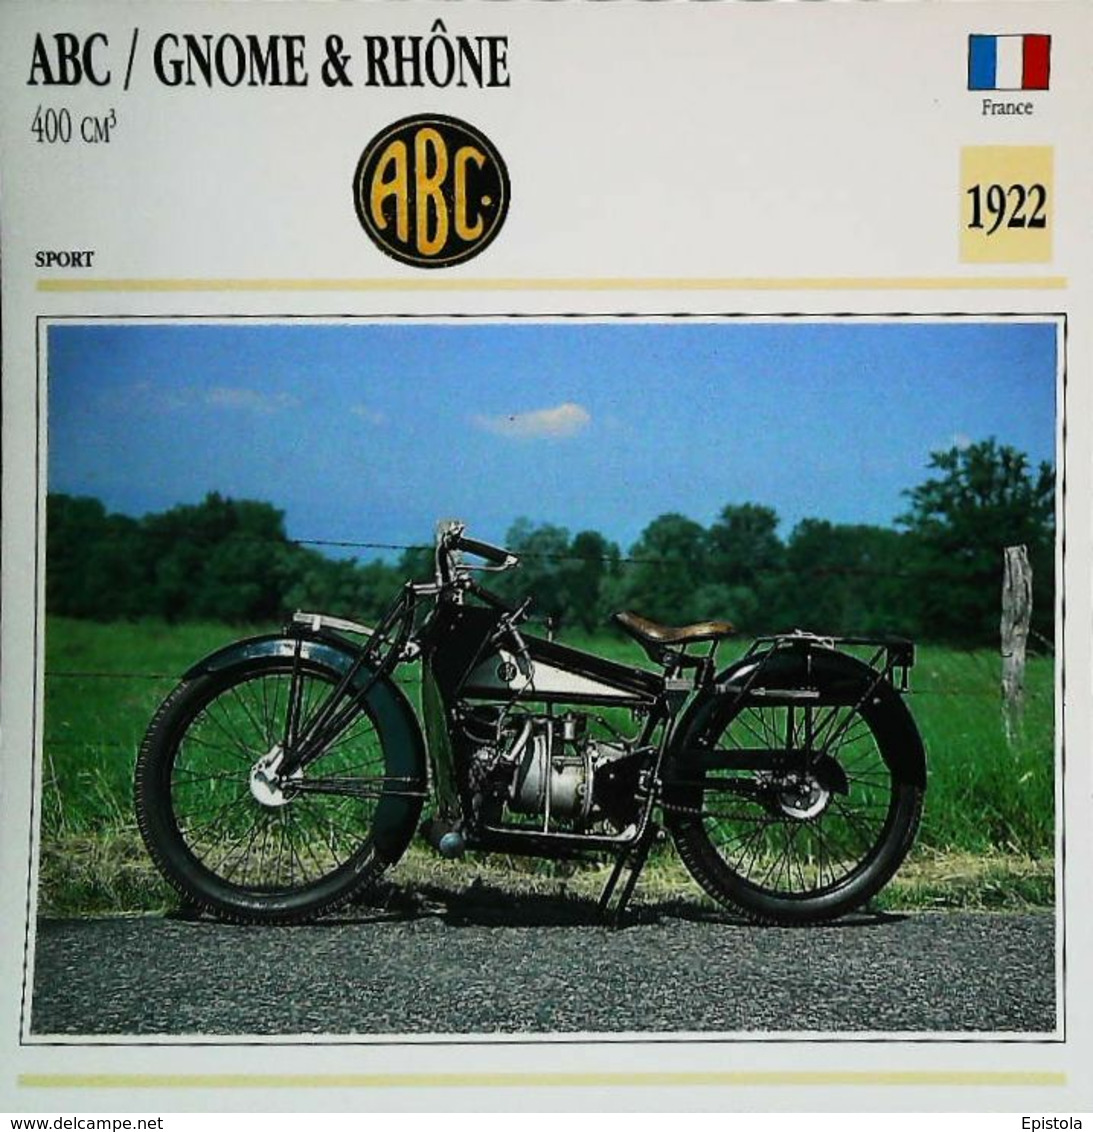 "ABC / GNOME & RHONE 400cc 1922 " Moto Française - Collection Fiche Technique Edito-Service S.A. - Collections